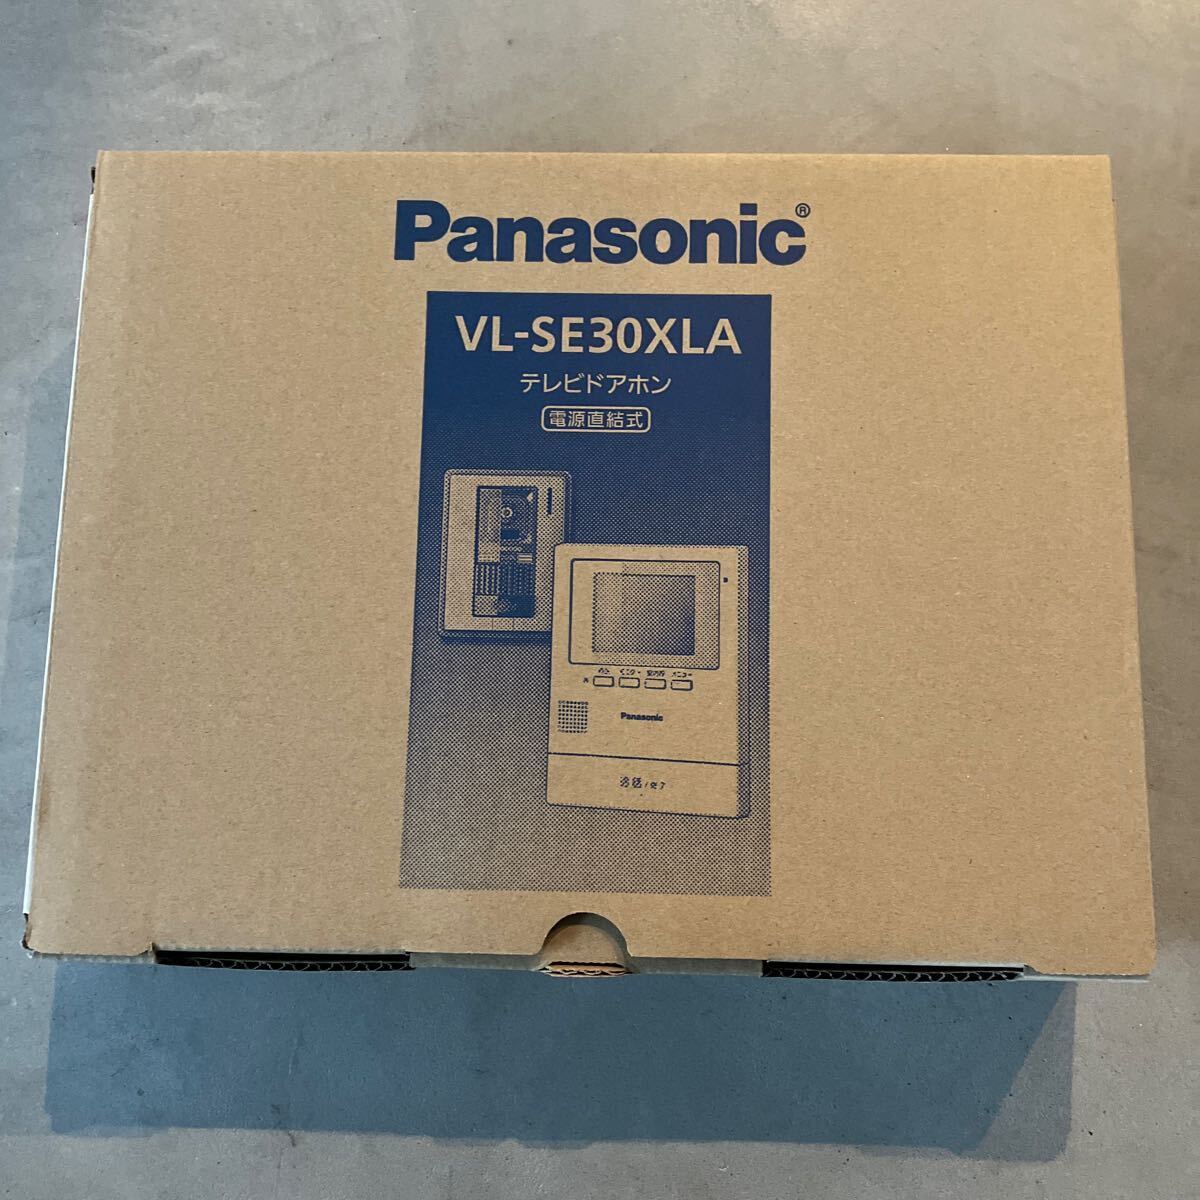 Panasonic パナソニック VL-SE30XLA テレビドアホン 電源直結式 住宅用インターホン _画像1